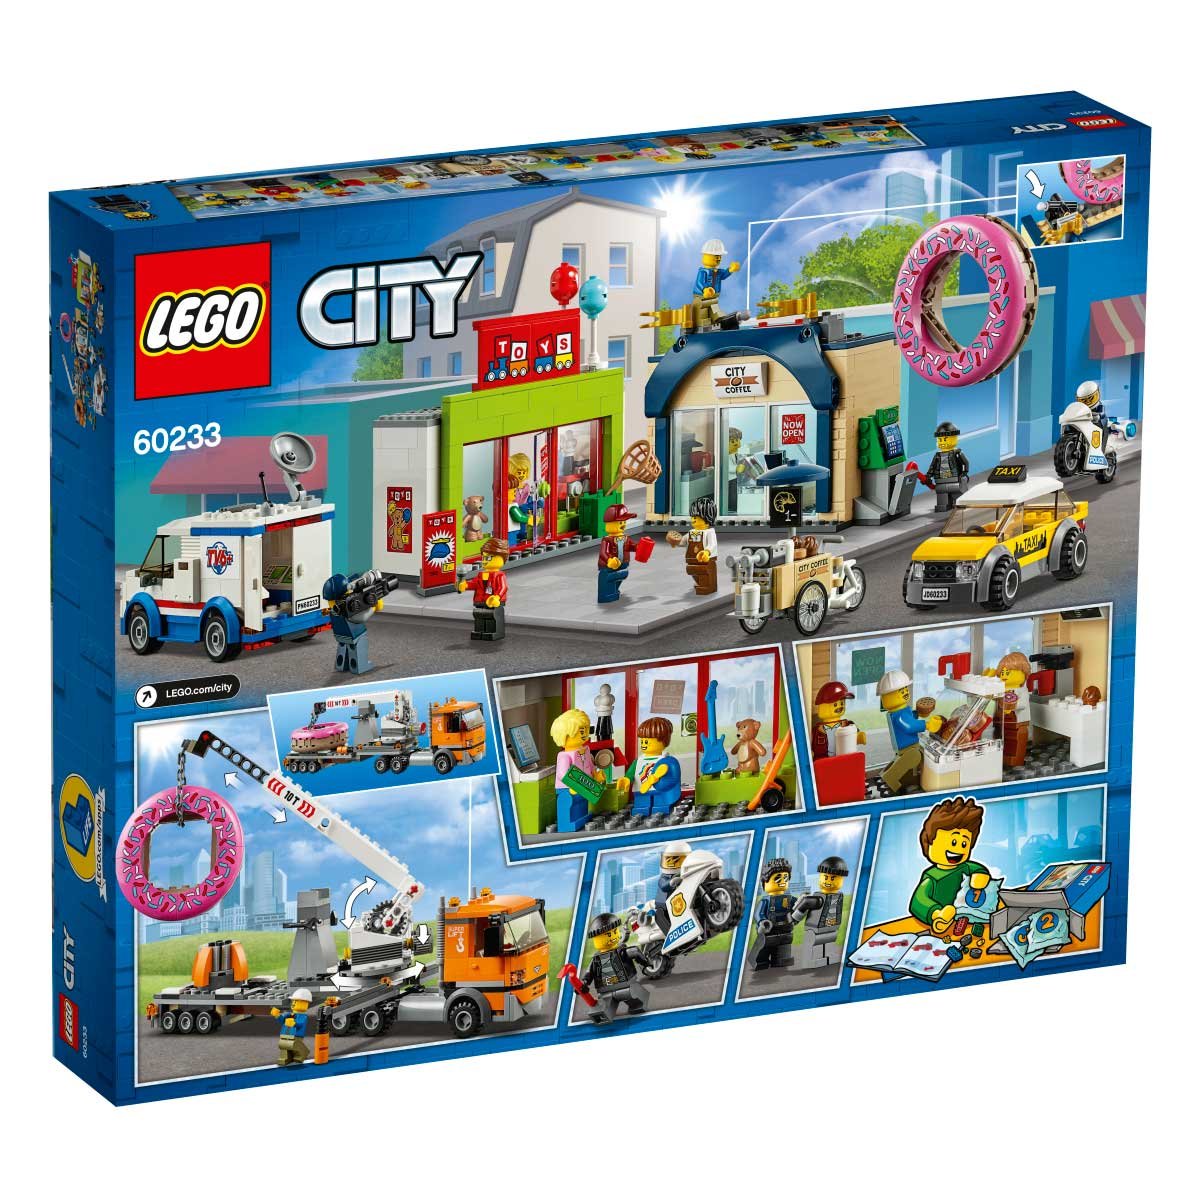 Apertura de la Tienda de Donas Lego